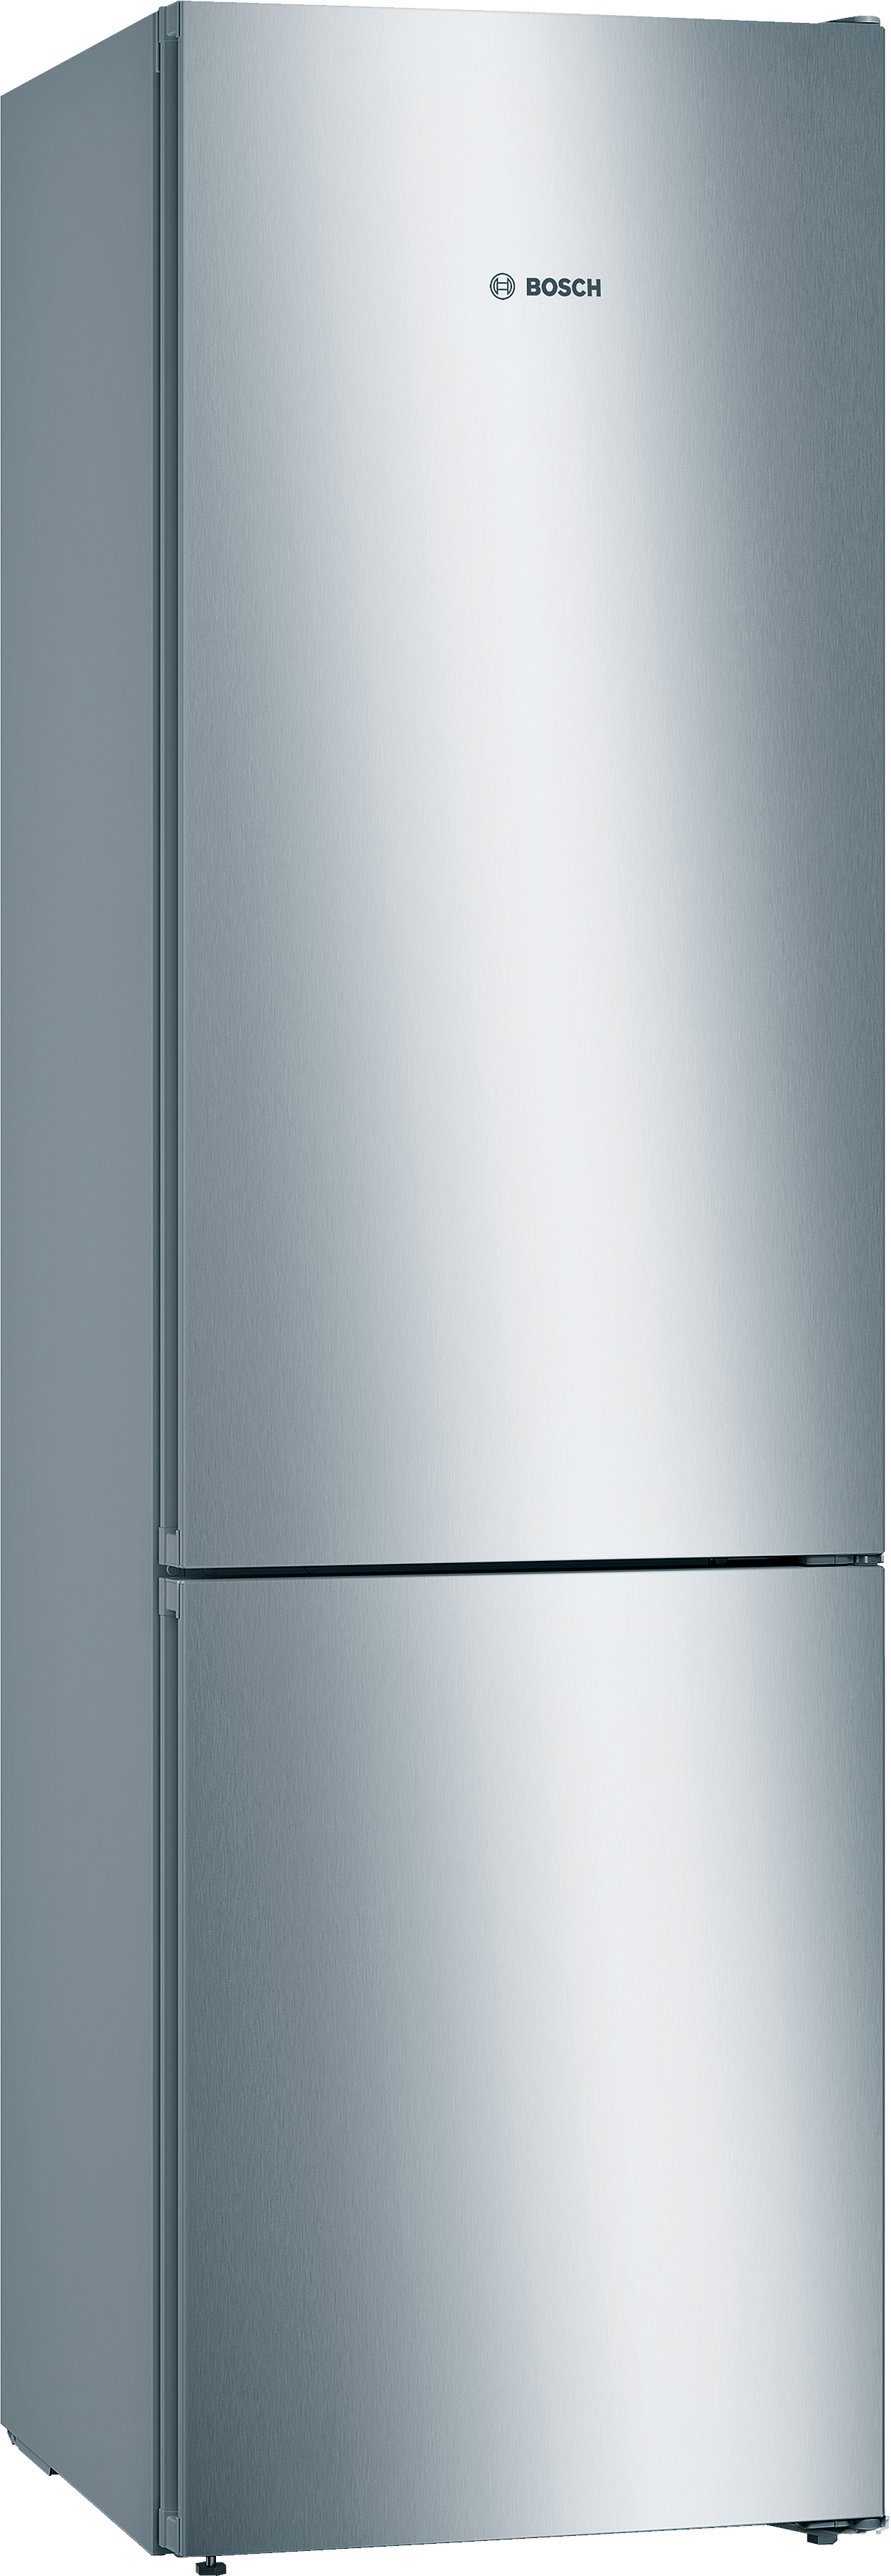 Холодильник Bosch KGN39VL316 в интернет-магазине, главное фото